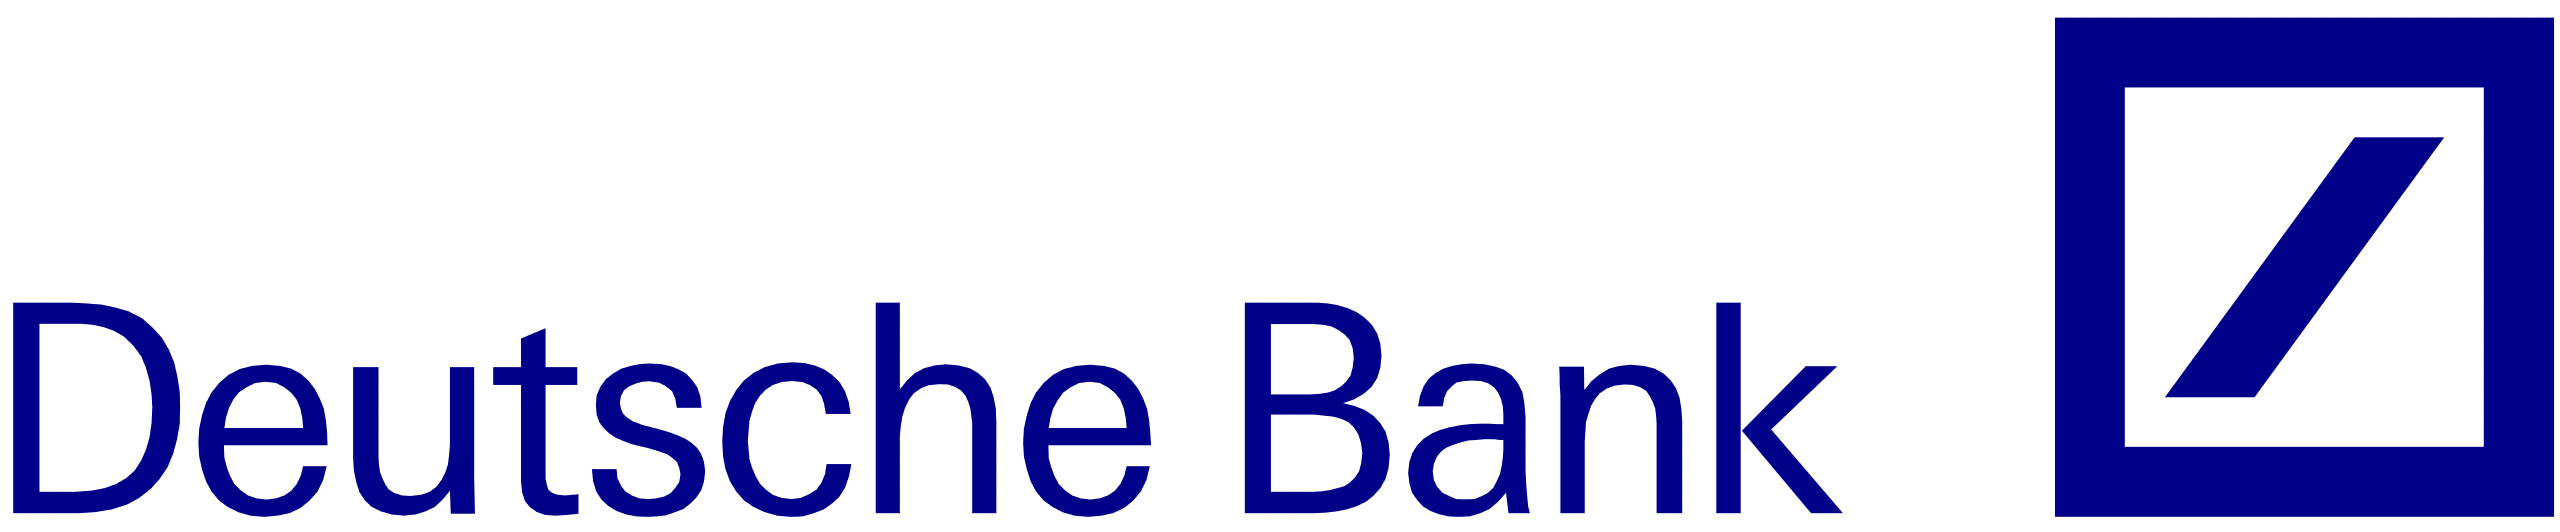 2560px-Deutsche_Bank_logo.svg.png